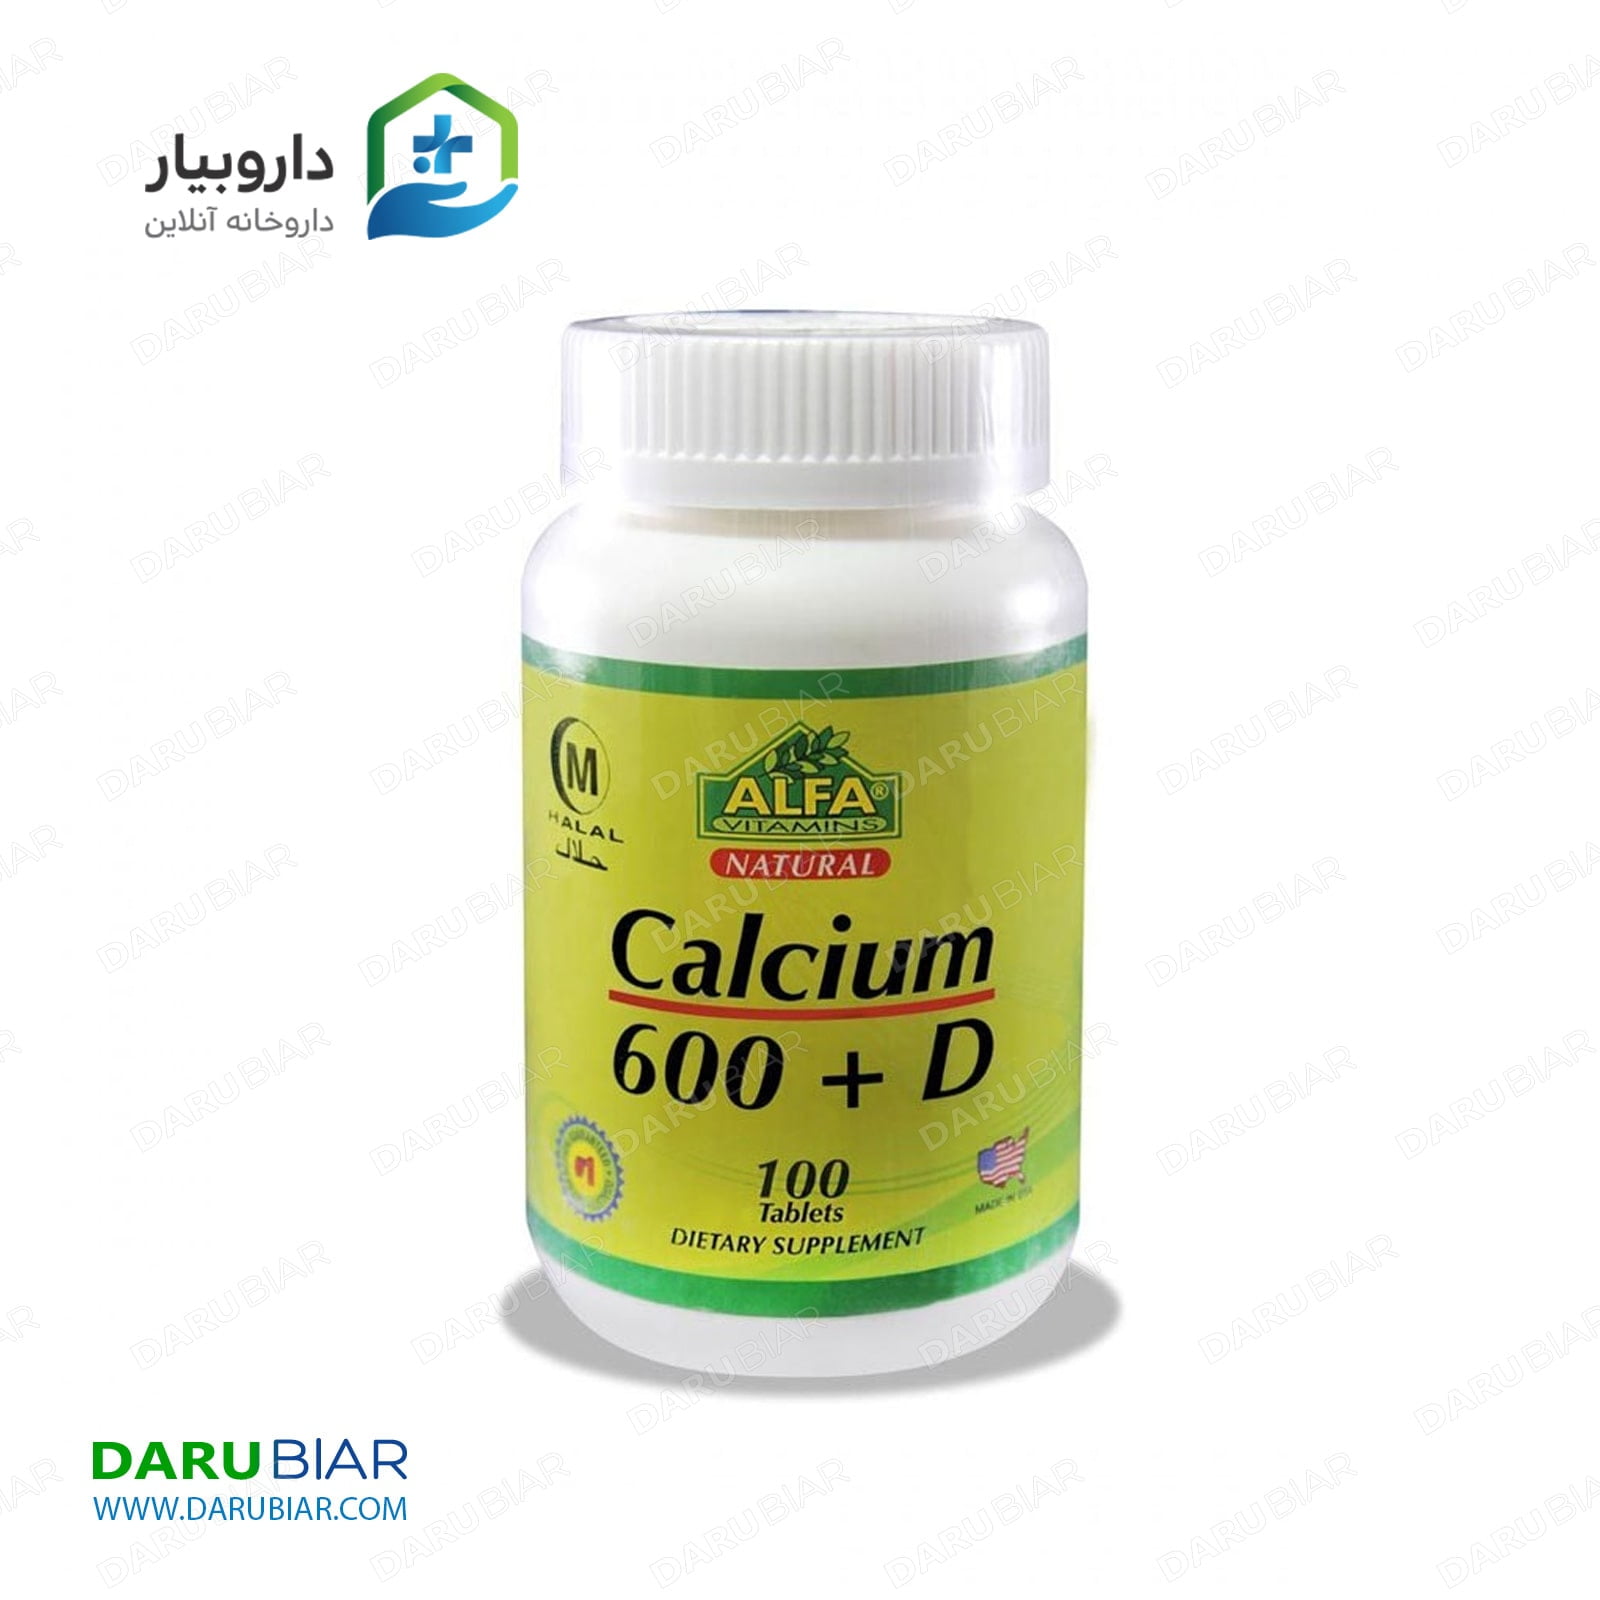 قرص کلسیم 600 و ویتامین D آلفا ویتامینز ۱۰۰ عدد ALFA Vitamins Calcium 600 mg + Vitamin D 100 Tabs